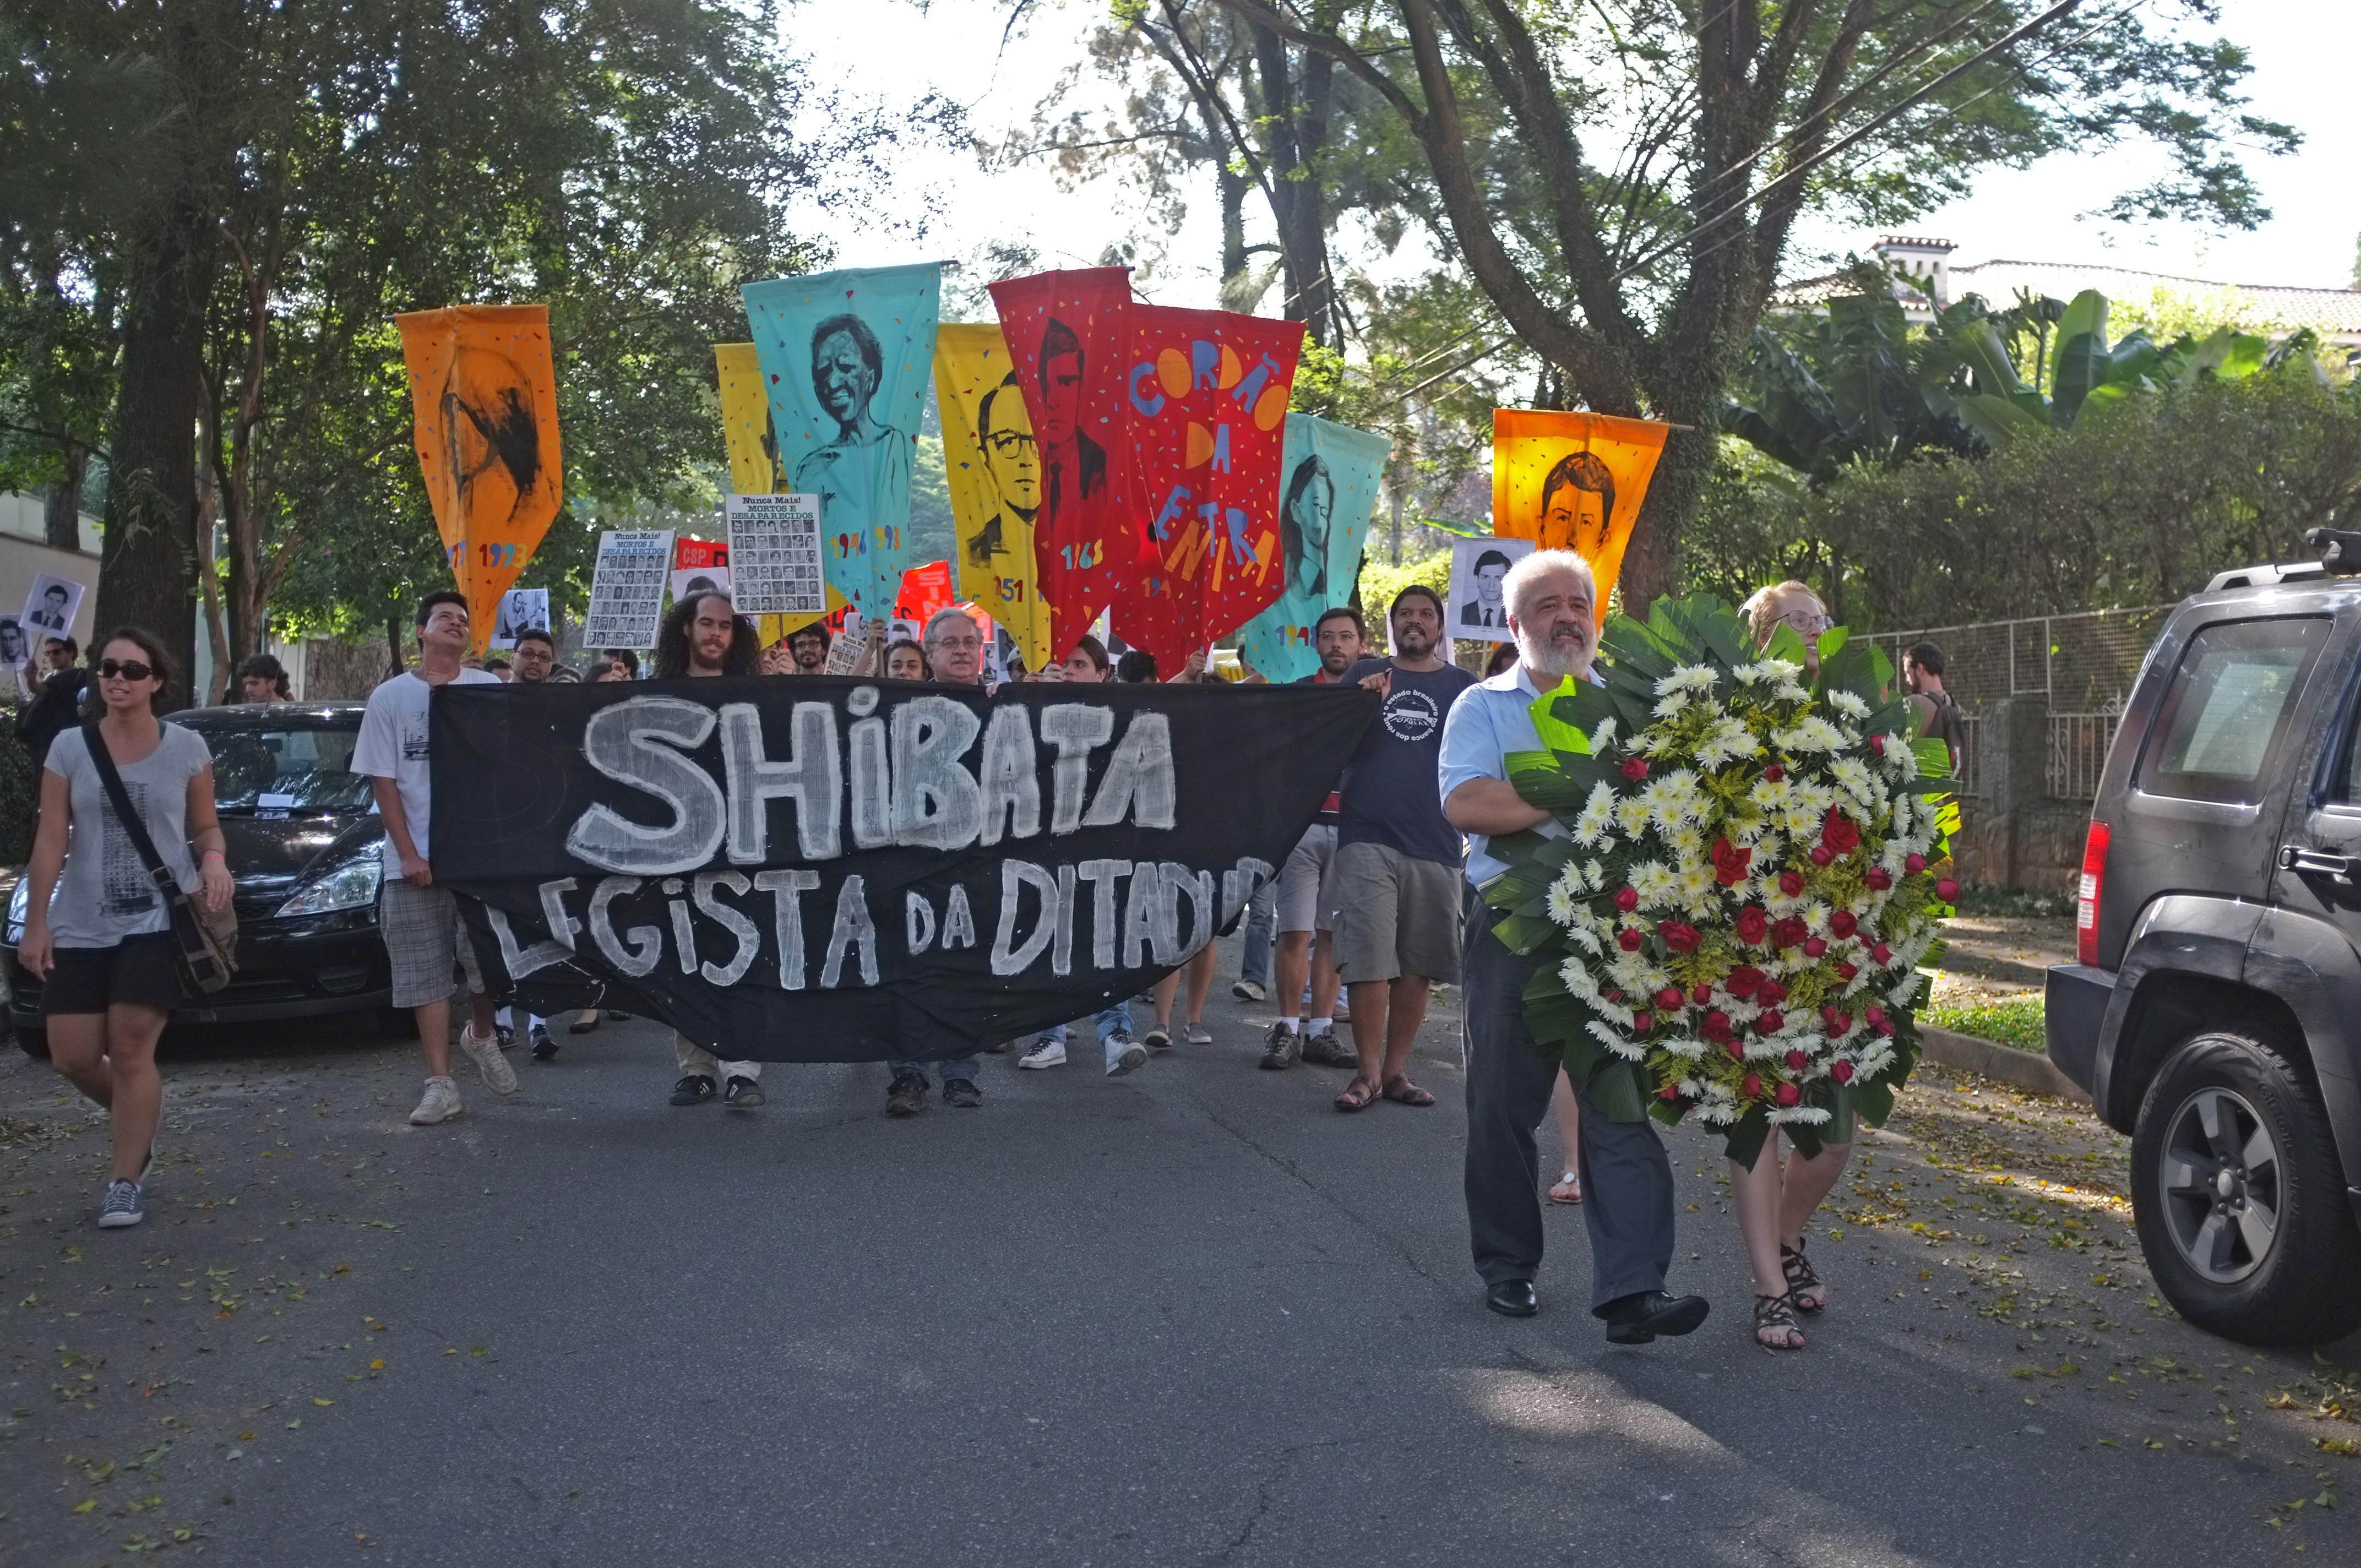 Manifestação da Frente de EsculachoPopular contra o legista da ditadura Harry Shibata, em 07/04/2012. Foto Paula Sacchetta.